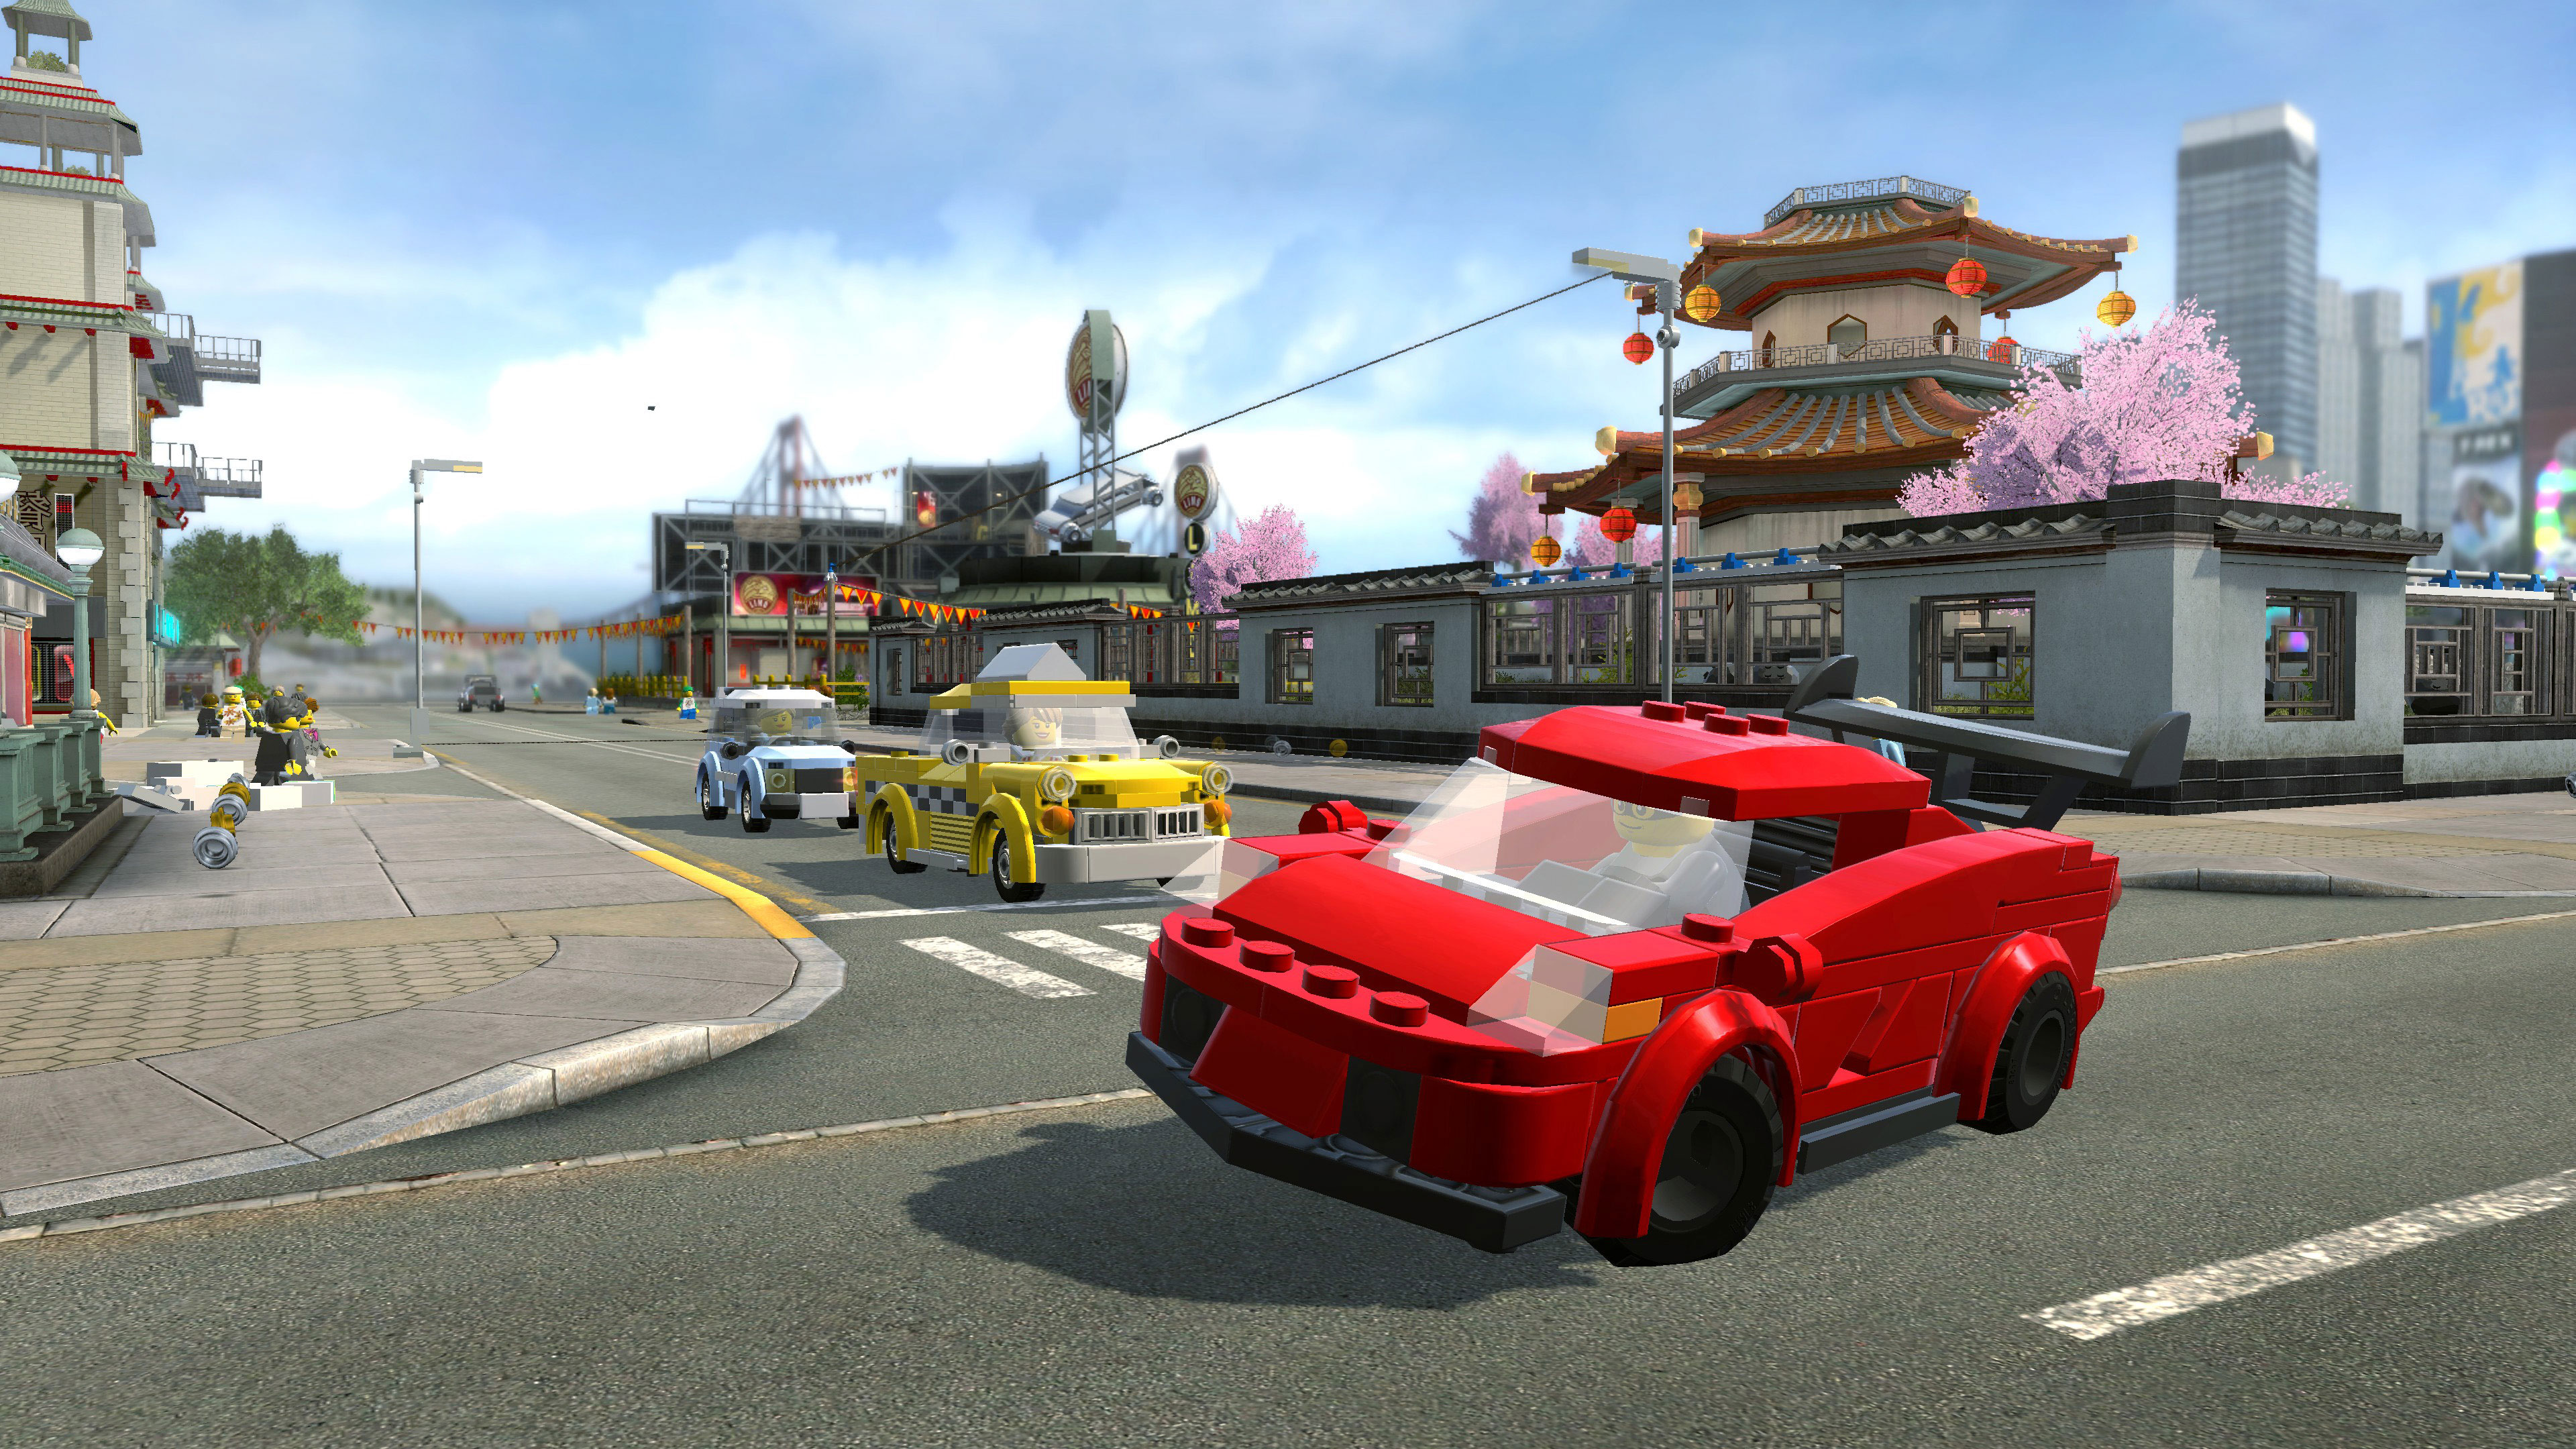 Plusieurs quêtes secondaires comme des courses de voiture, sont inclues dans LEGO City Undercover